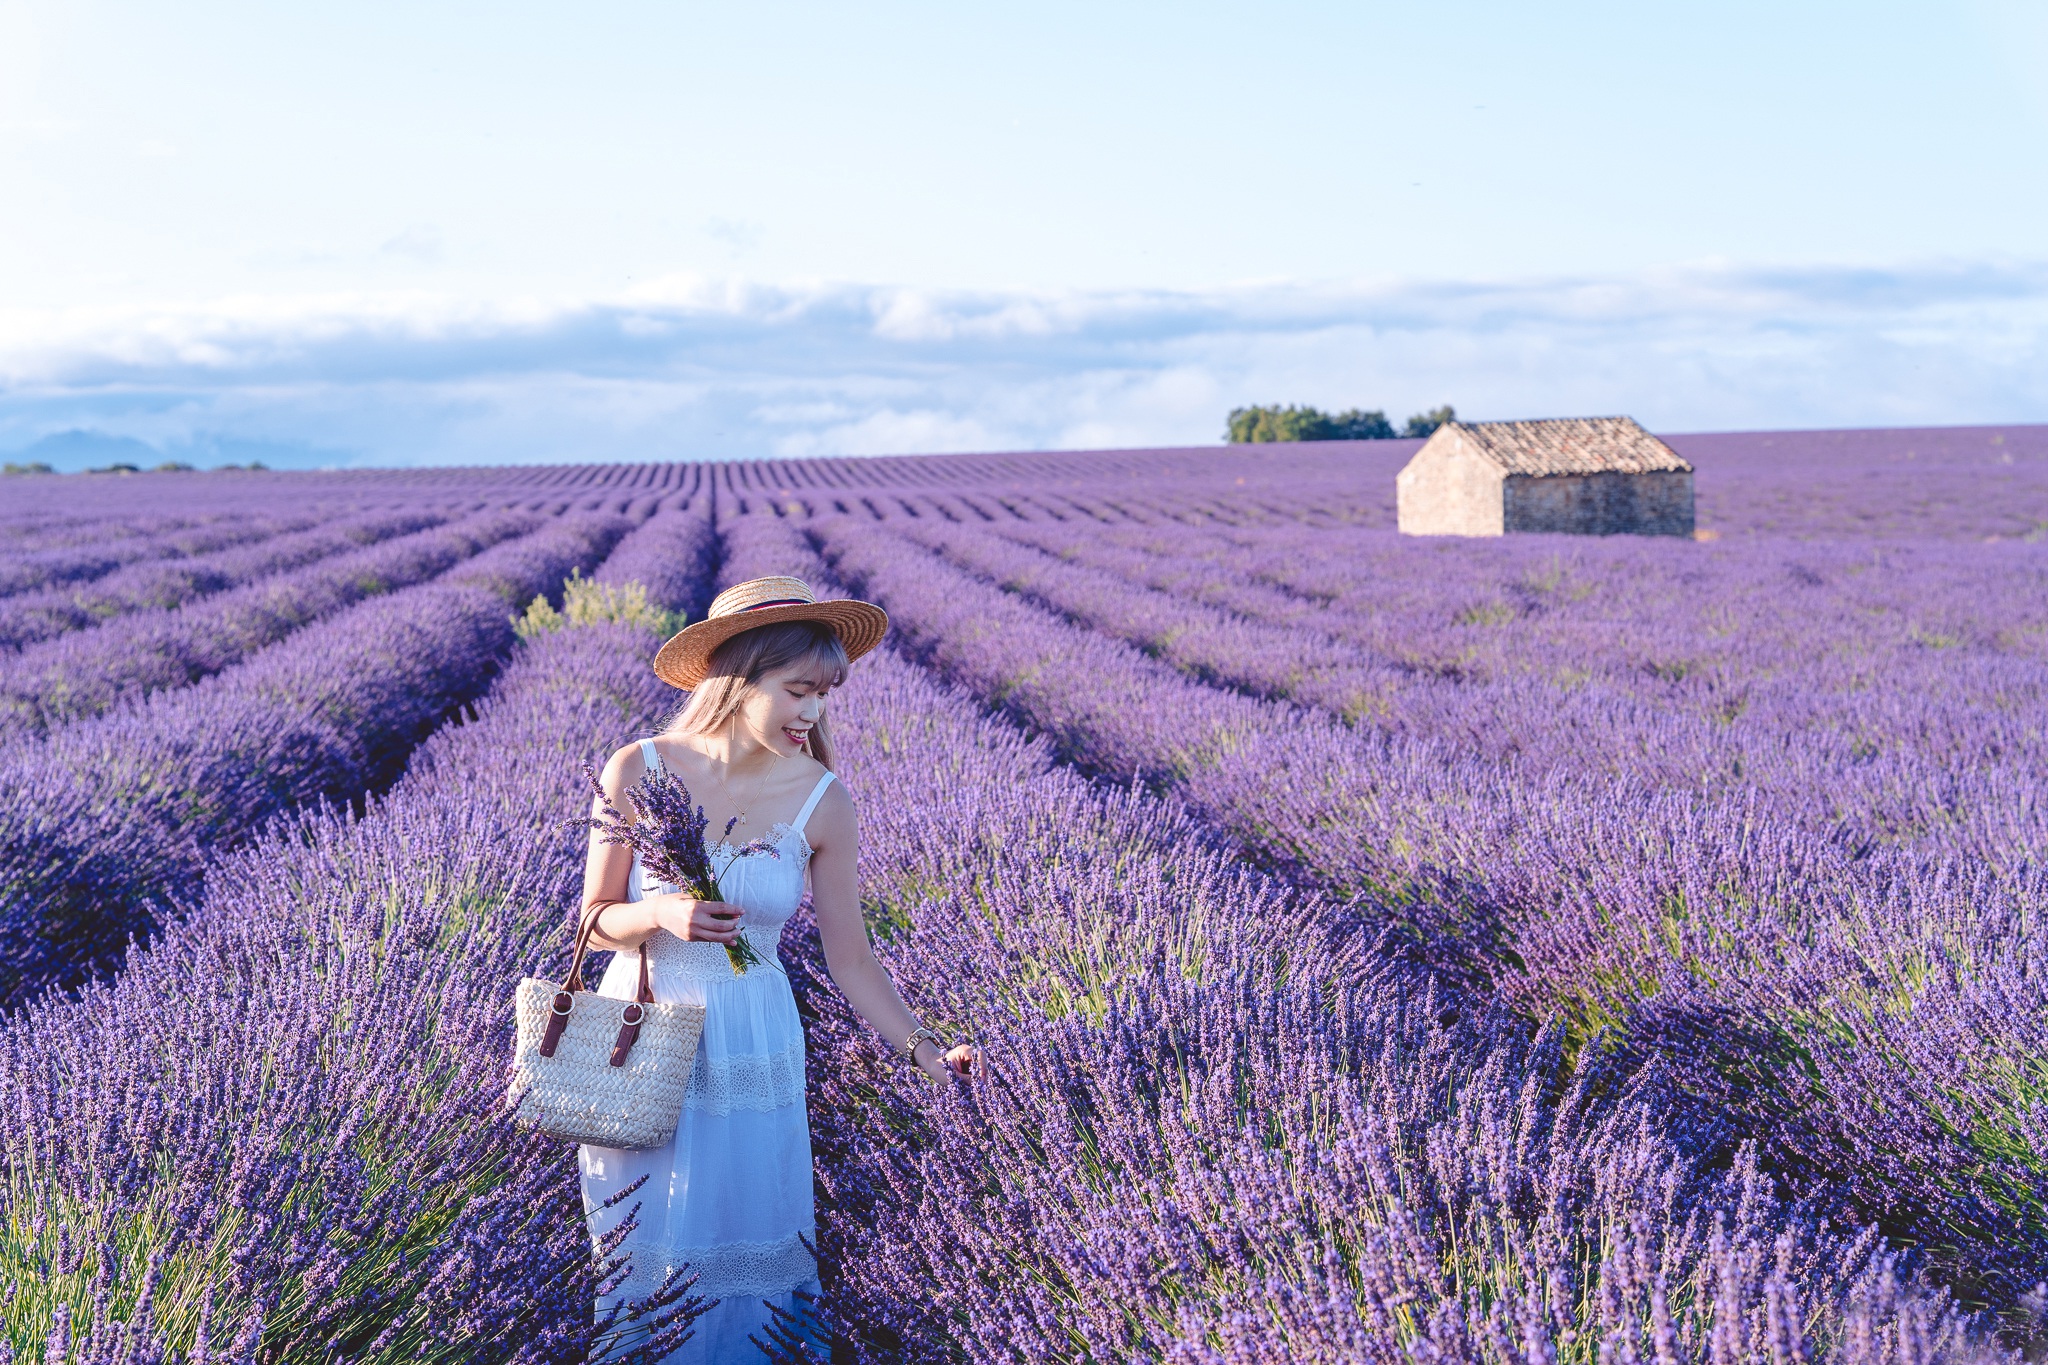 Mau chóng được đắm mình trong những cánh đồng oải hương tuyệt đẹp ở Pháp. Hãy xem hình ảnh và cảm nhận cảm giác thư thái và yên bình.